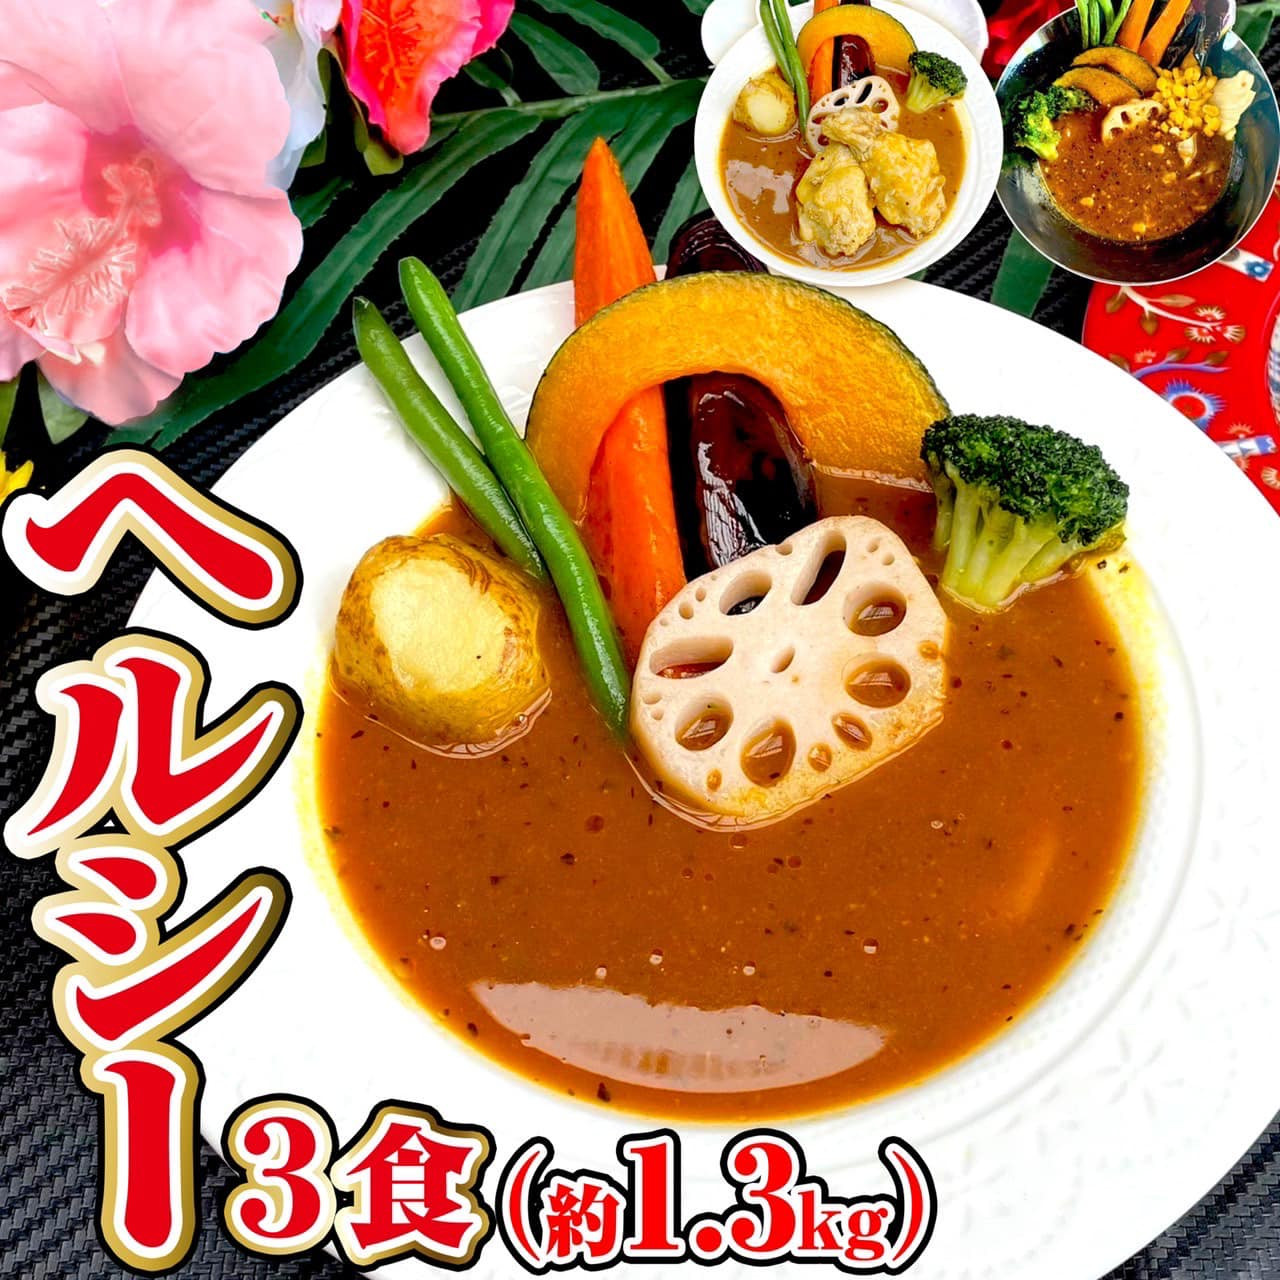 
冷凍 スープカレー ヘルシー 3食セット(計1.25kg) チキン 薬膳 ベジタブル
